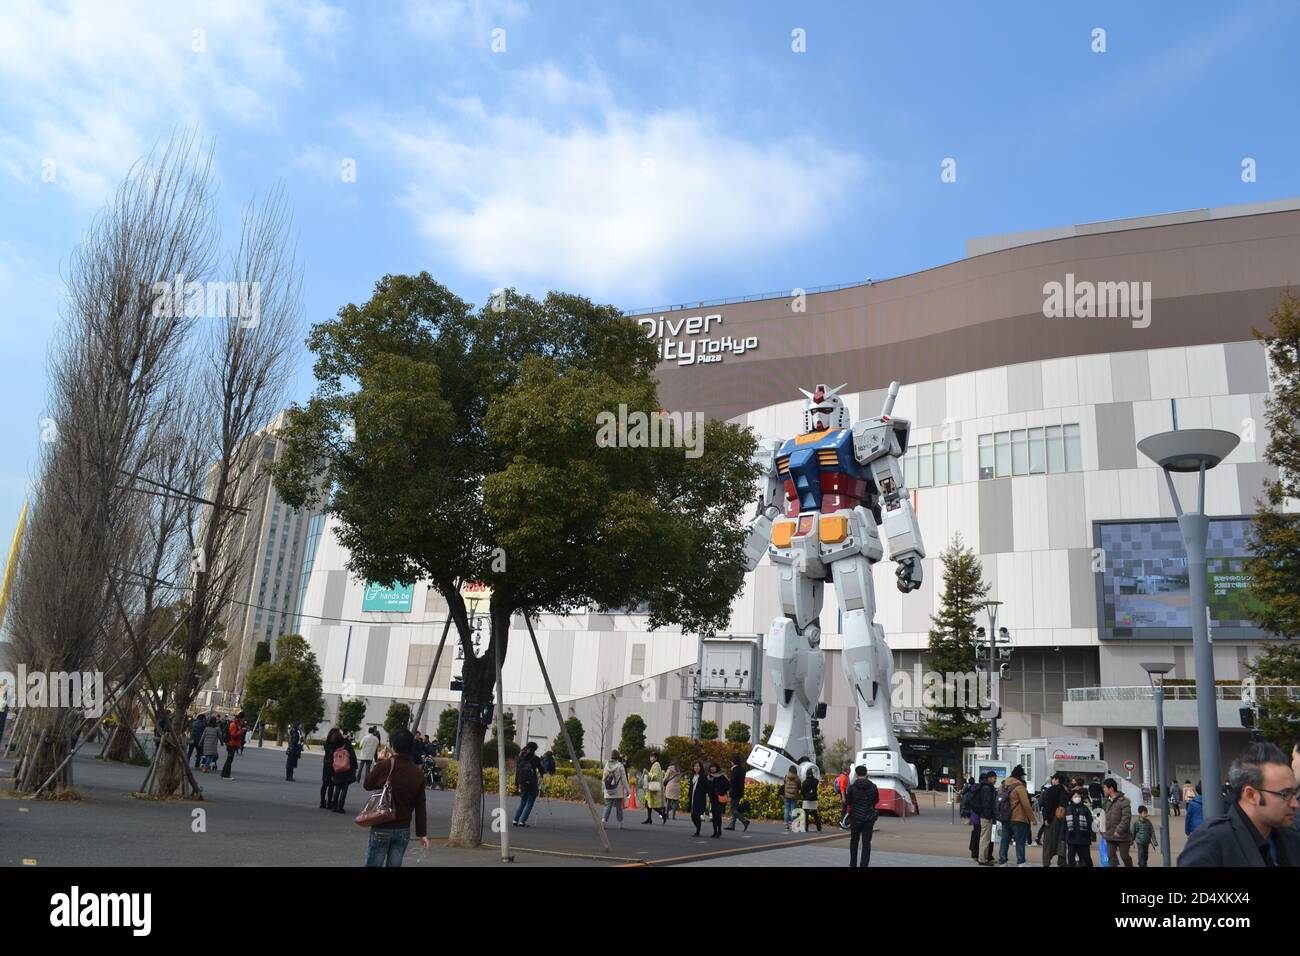 Tokyo, Japan-2/26/16: Menschenmassen versammeln sich um die lebensgroße Statue des RX-78-2 Gundam, bekannt durch den Anime Gundam. Stockfoto